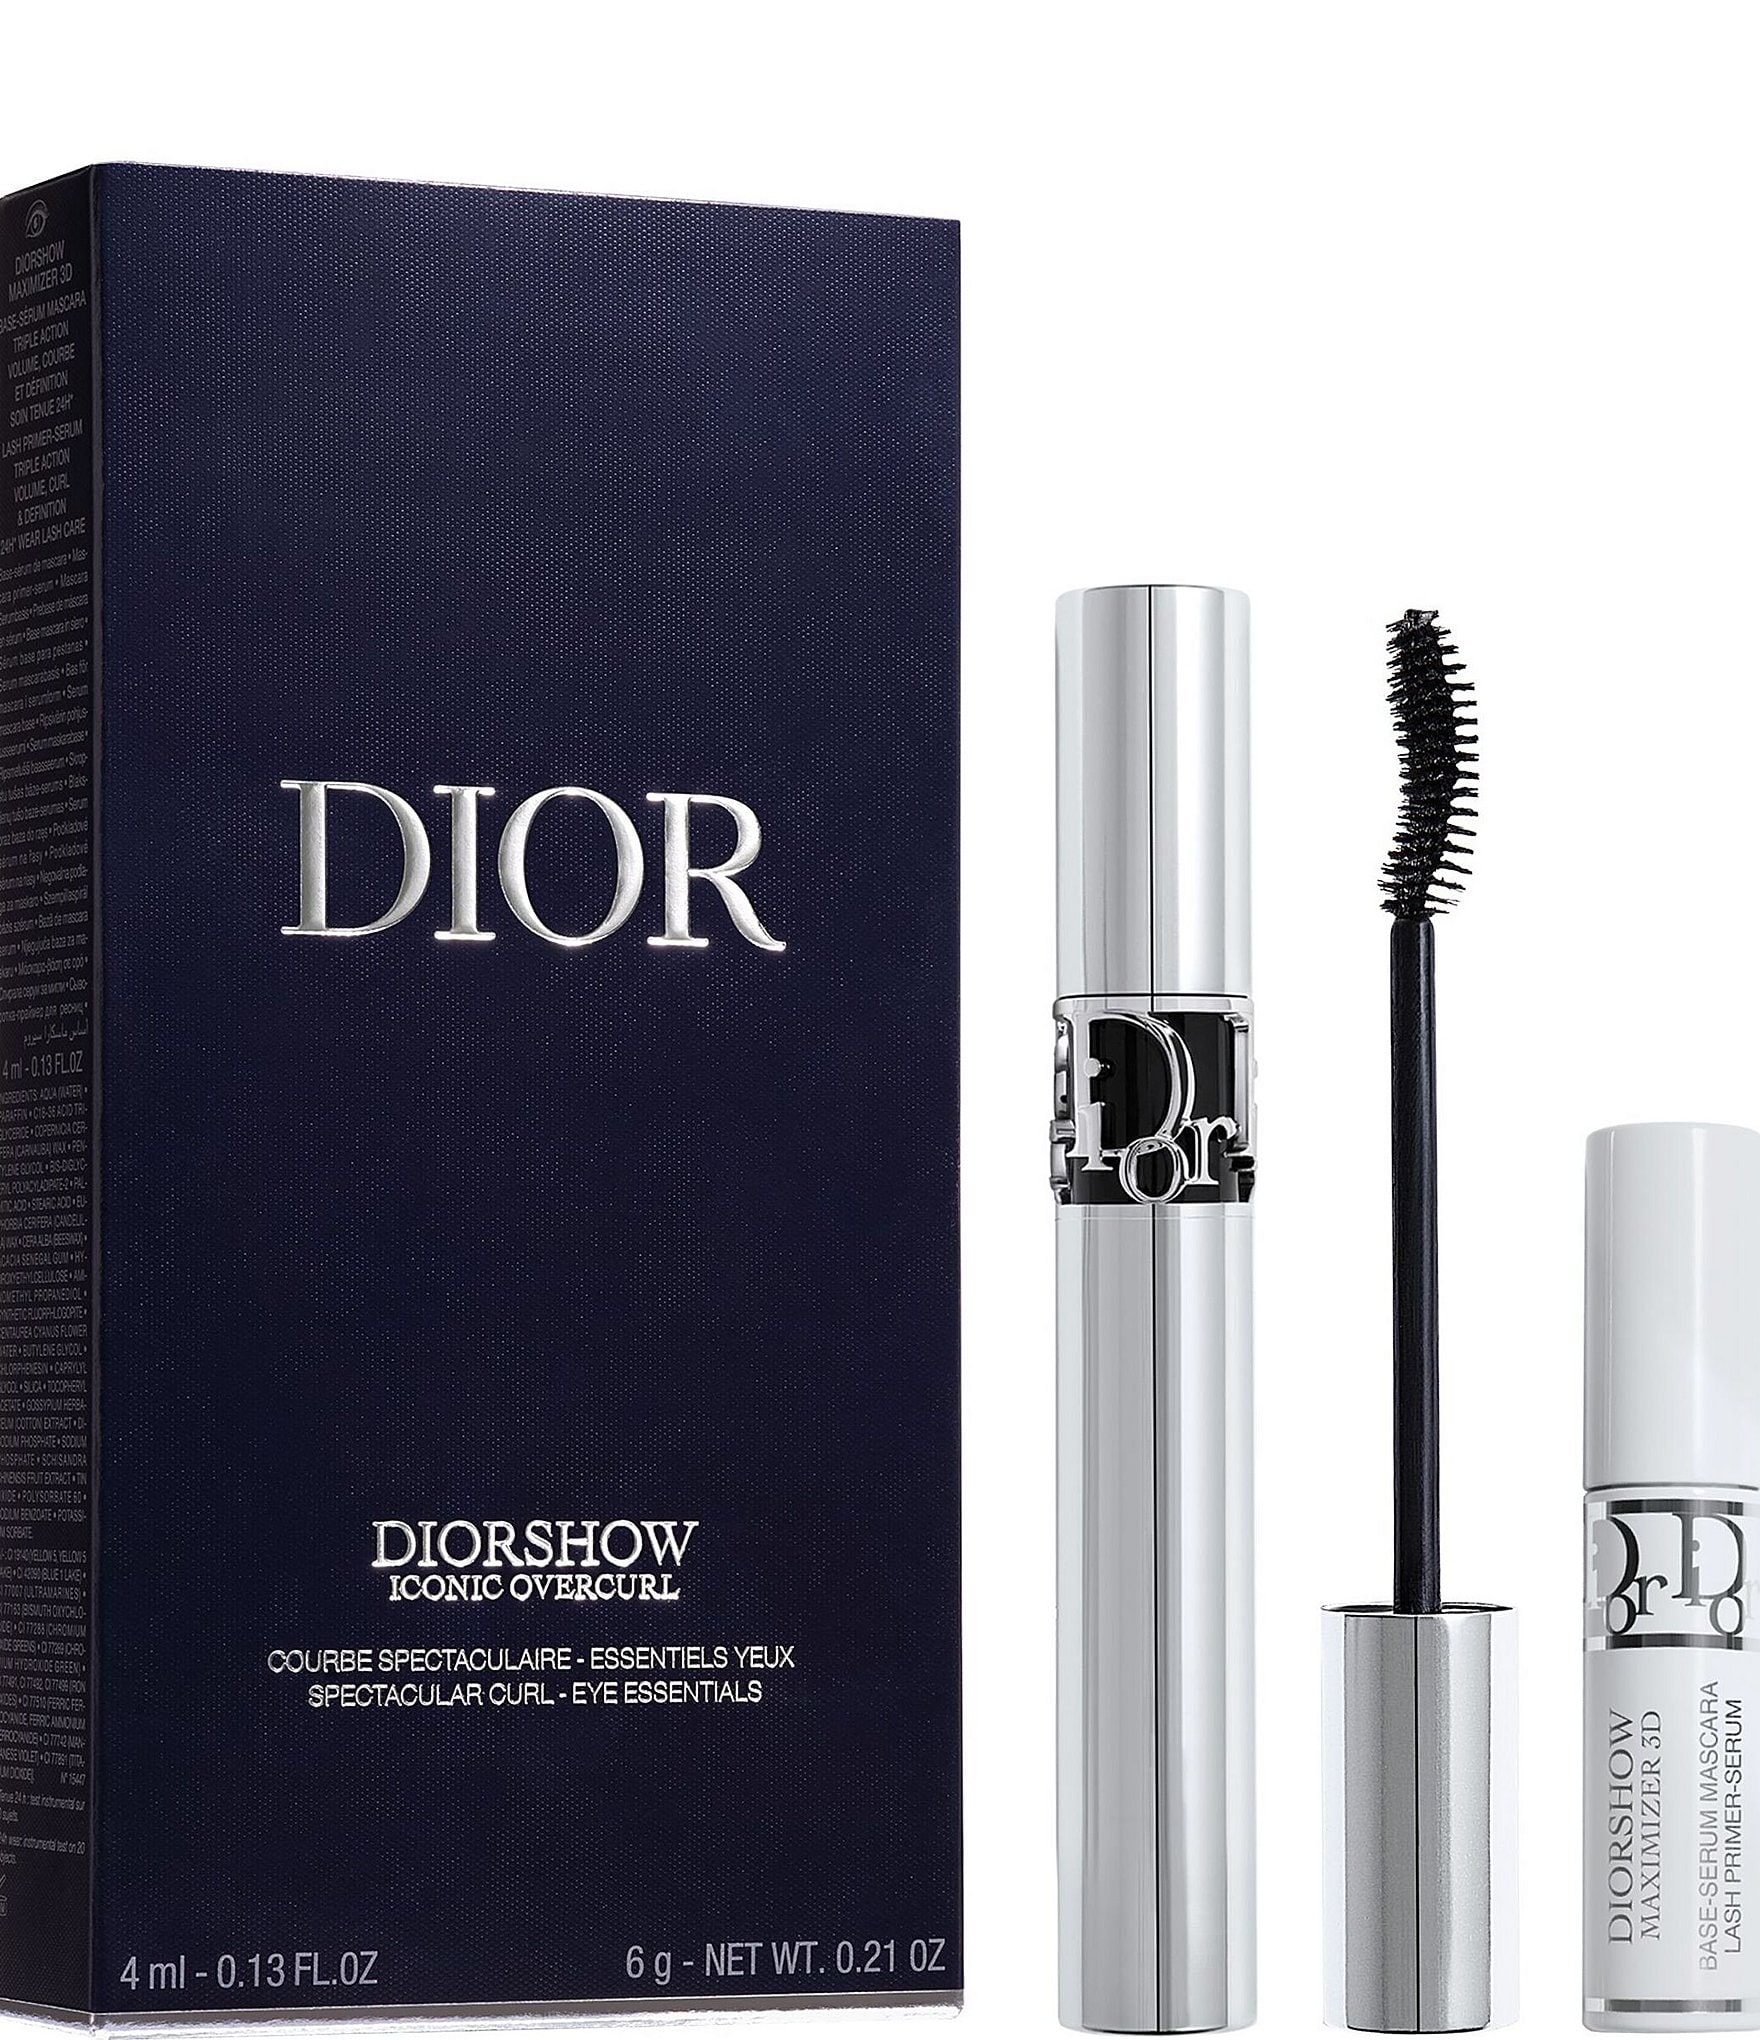 Dior Diorshow Iconic Overcurl Essentials Set |